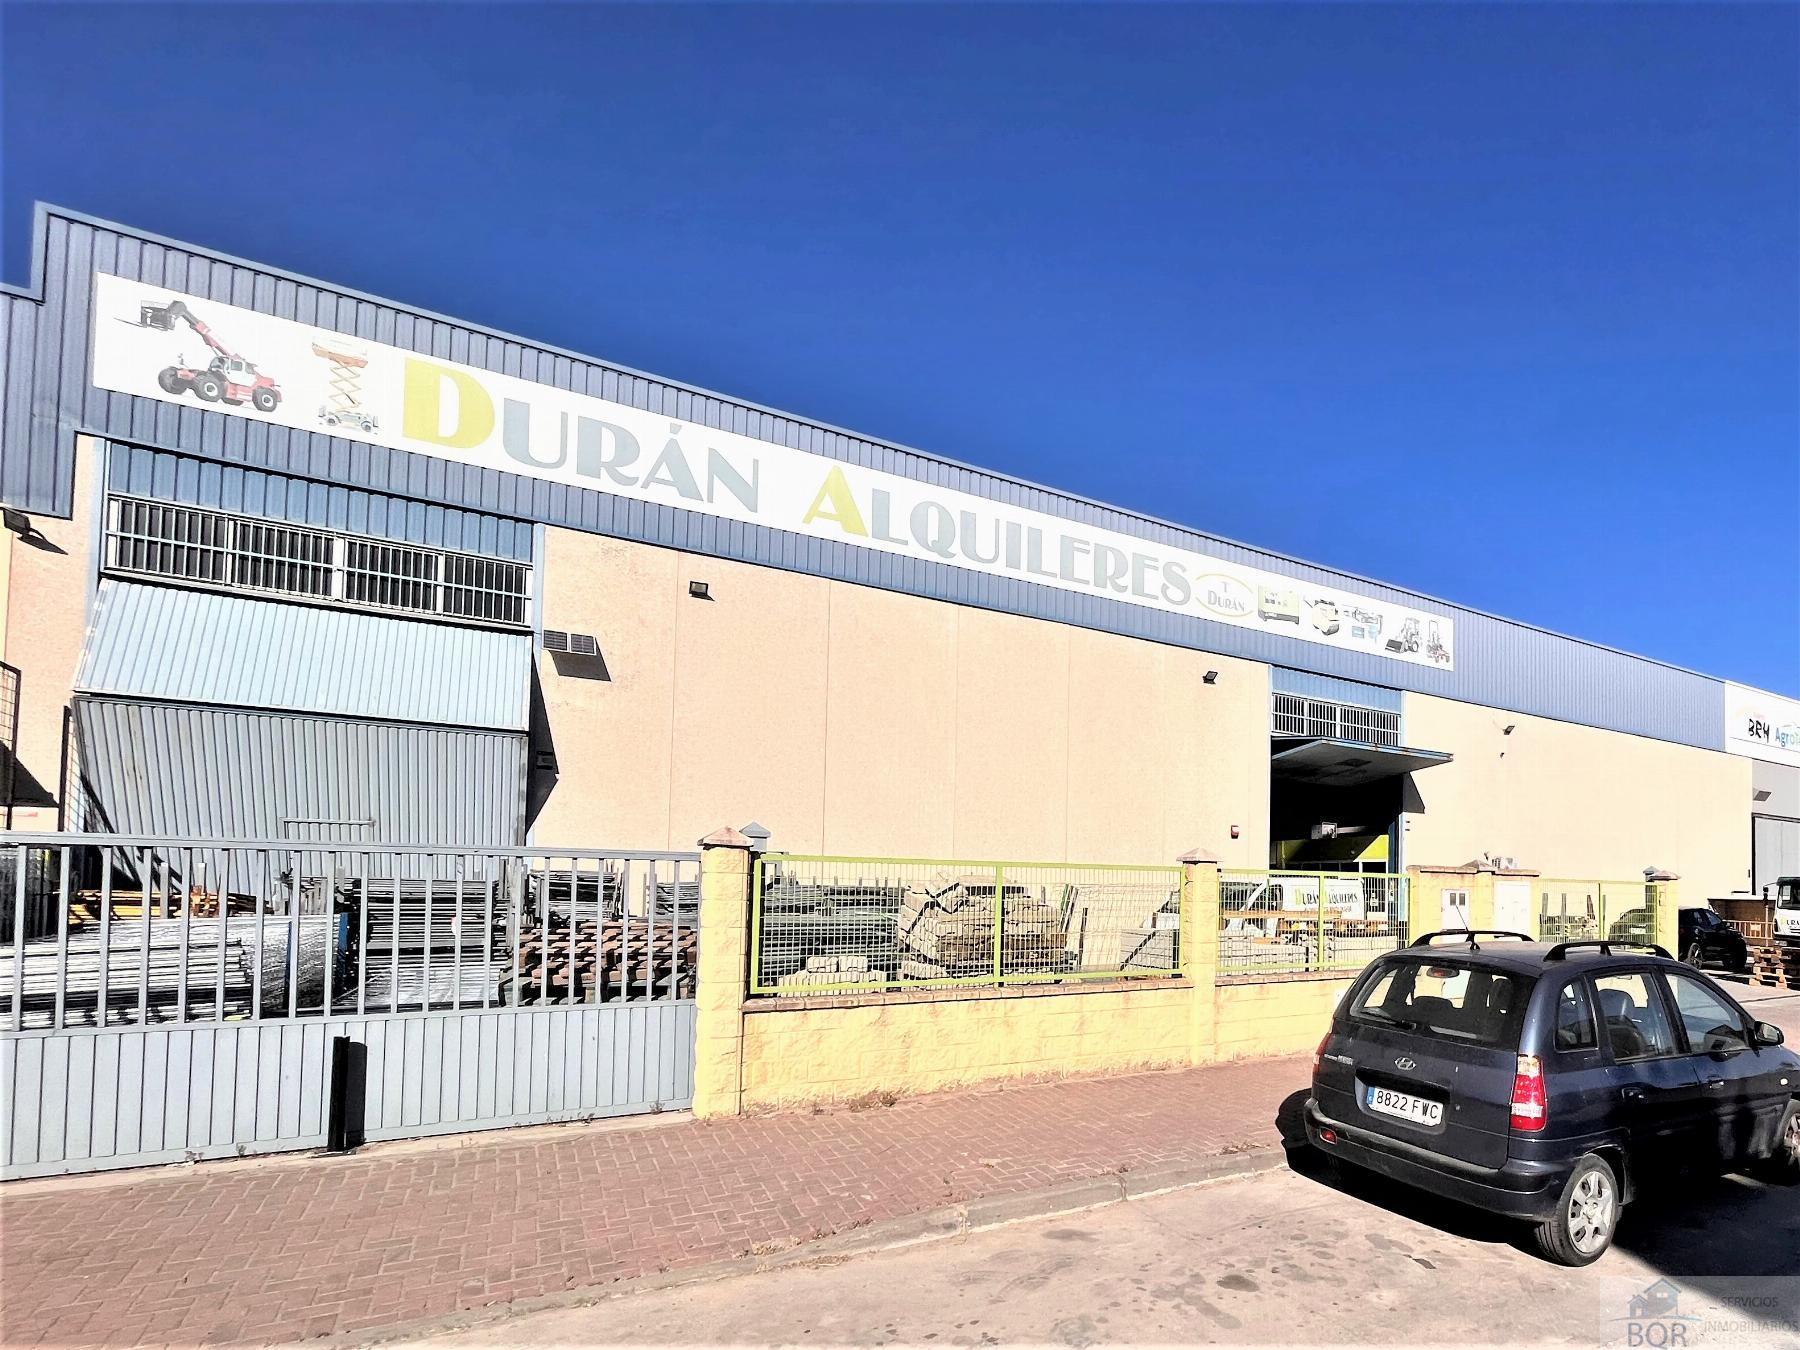 Verkoop van industrieel gebouw in Jerez de la Frontera